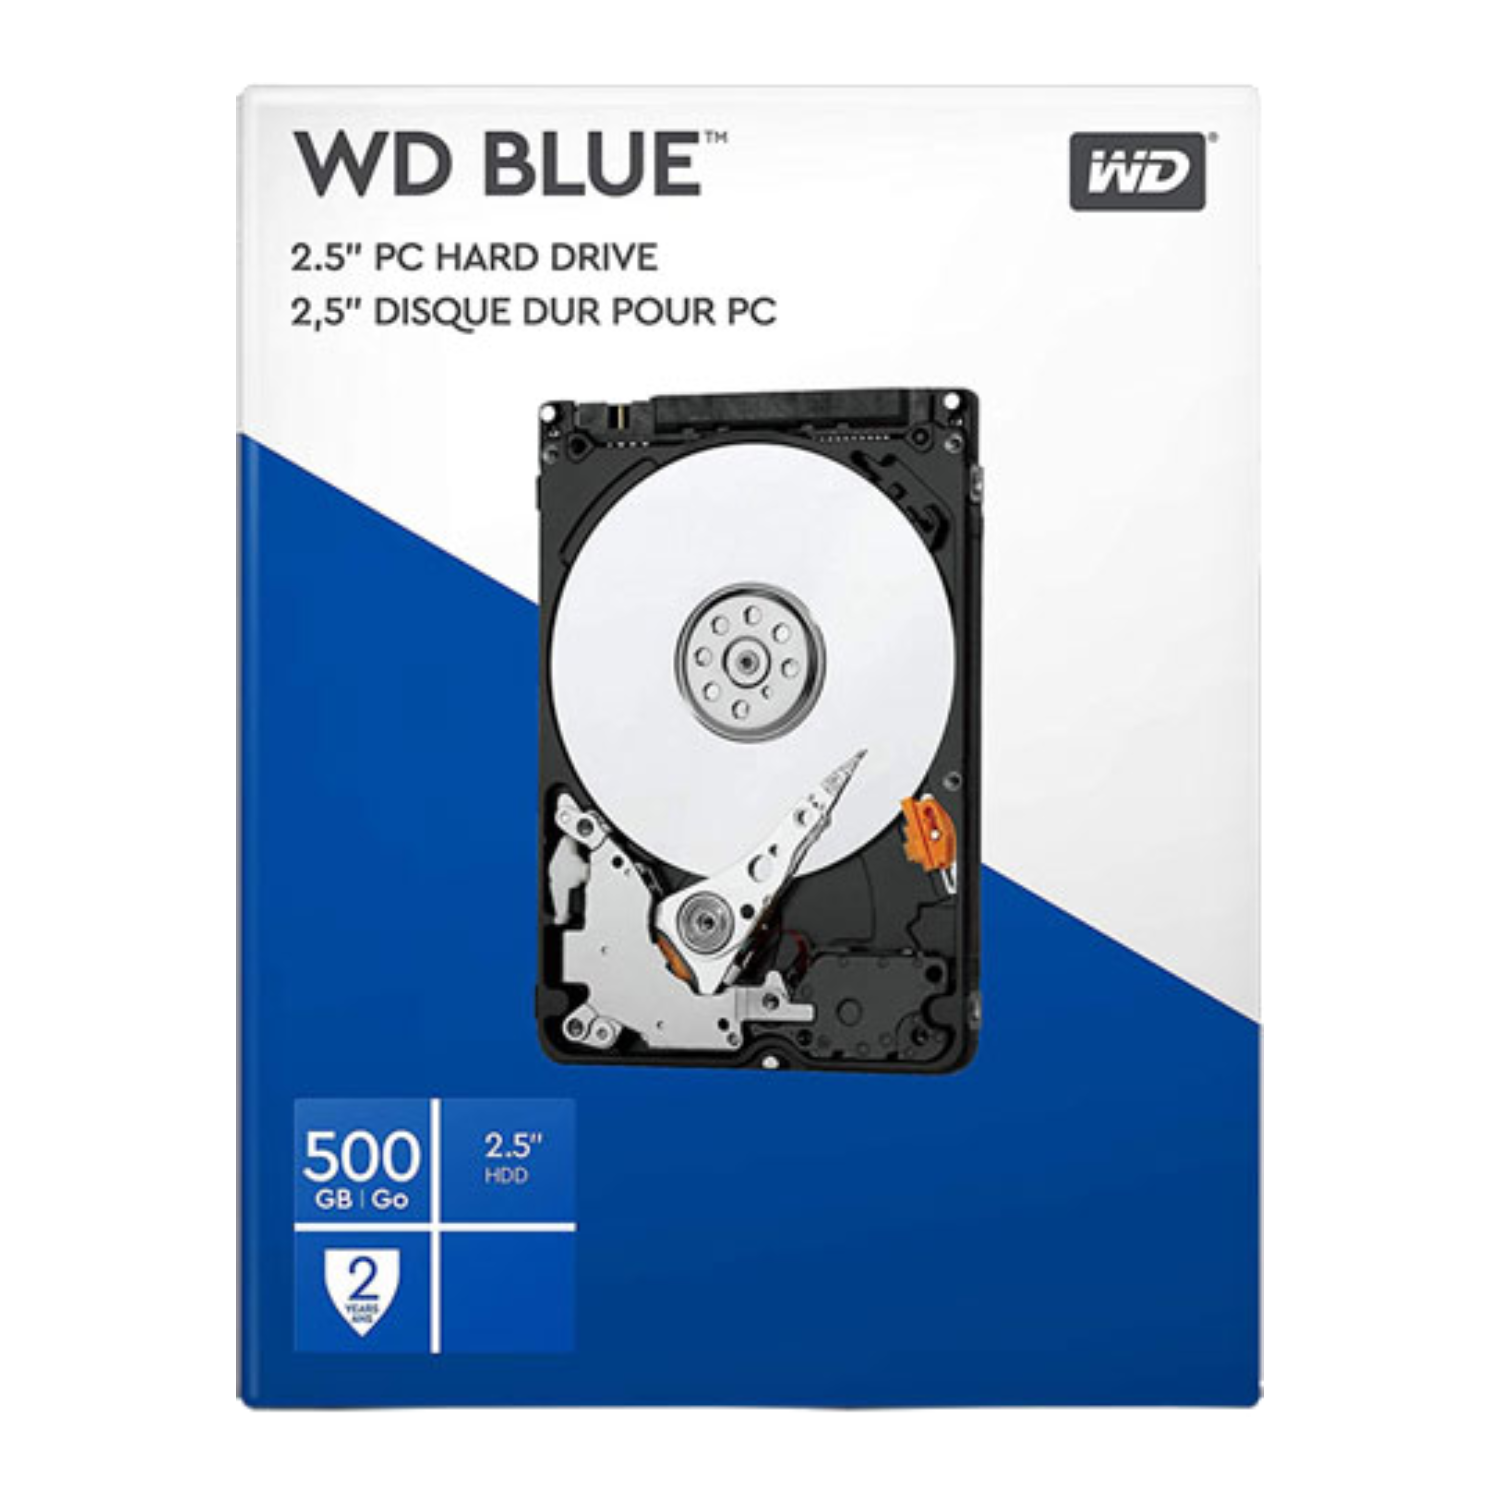 Disco Duro De 500gb laptop mainstream interno 2.5 sata ii hdd western digital wdbmyh5000ance 500 5400 rpm wdbmyh5000ancersn sata2 blue 8 3